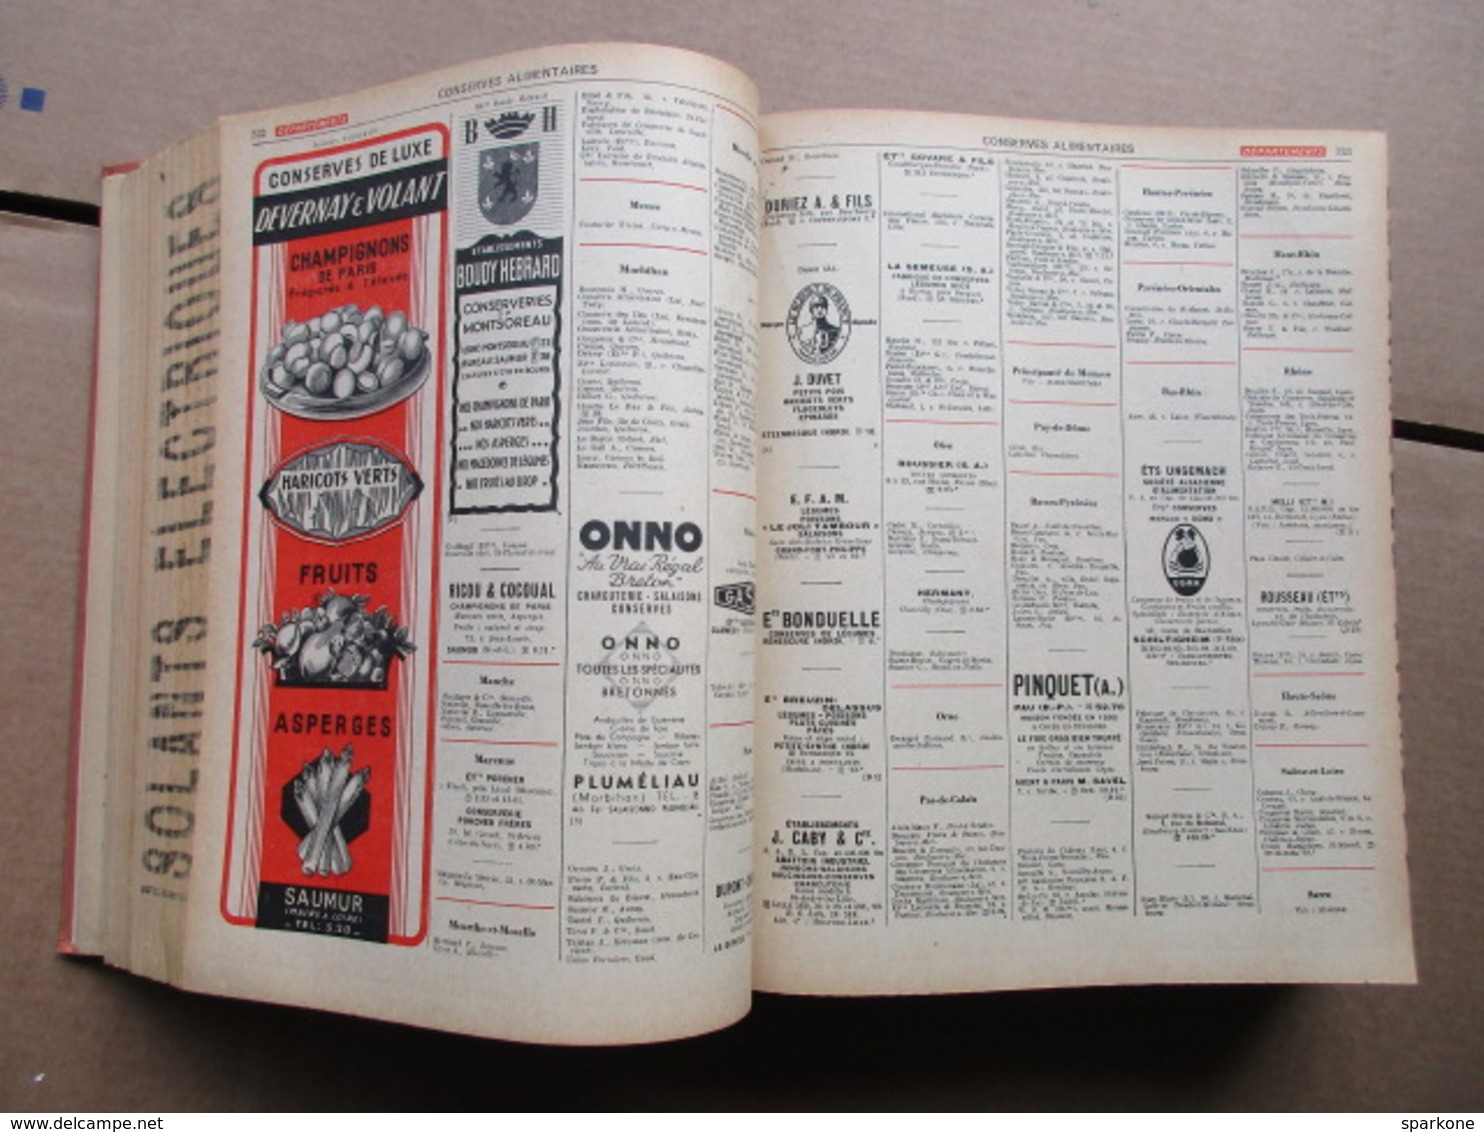 Annuaire du Commerce / Didot-Bottin / Professions Départements de 1951